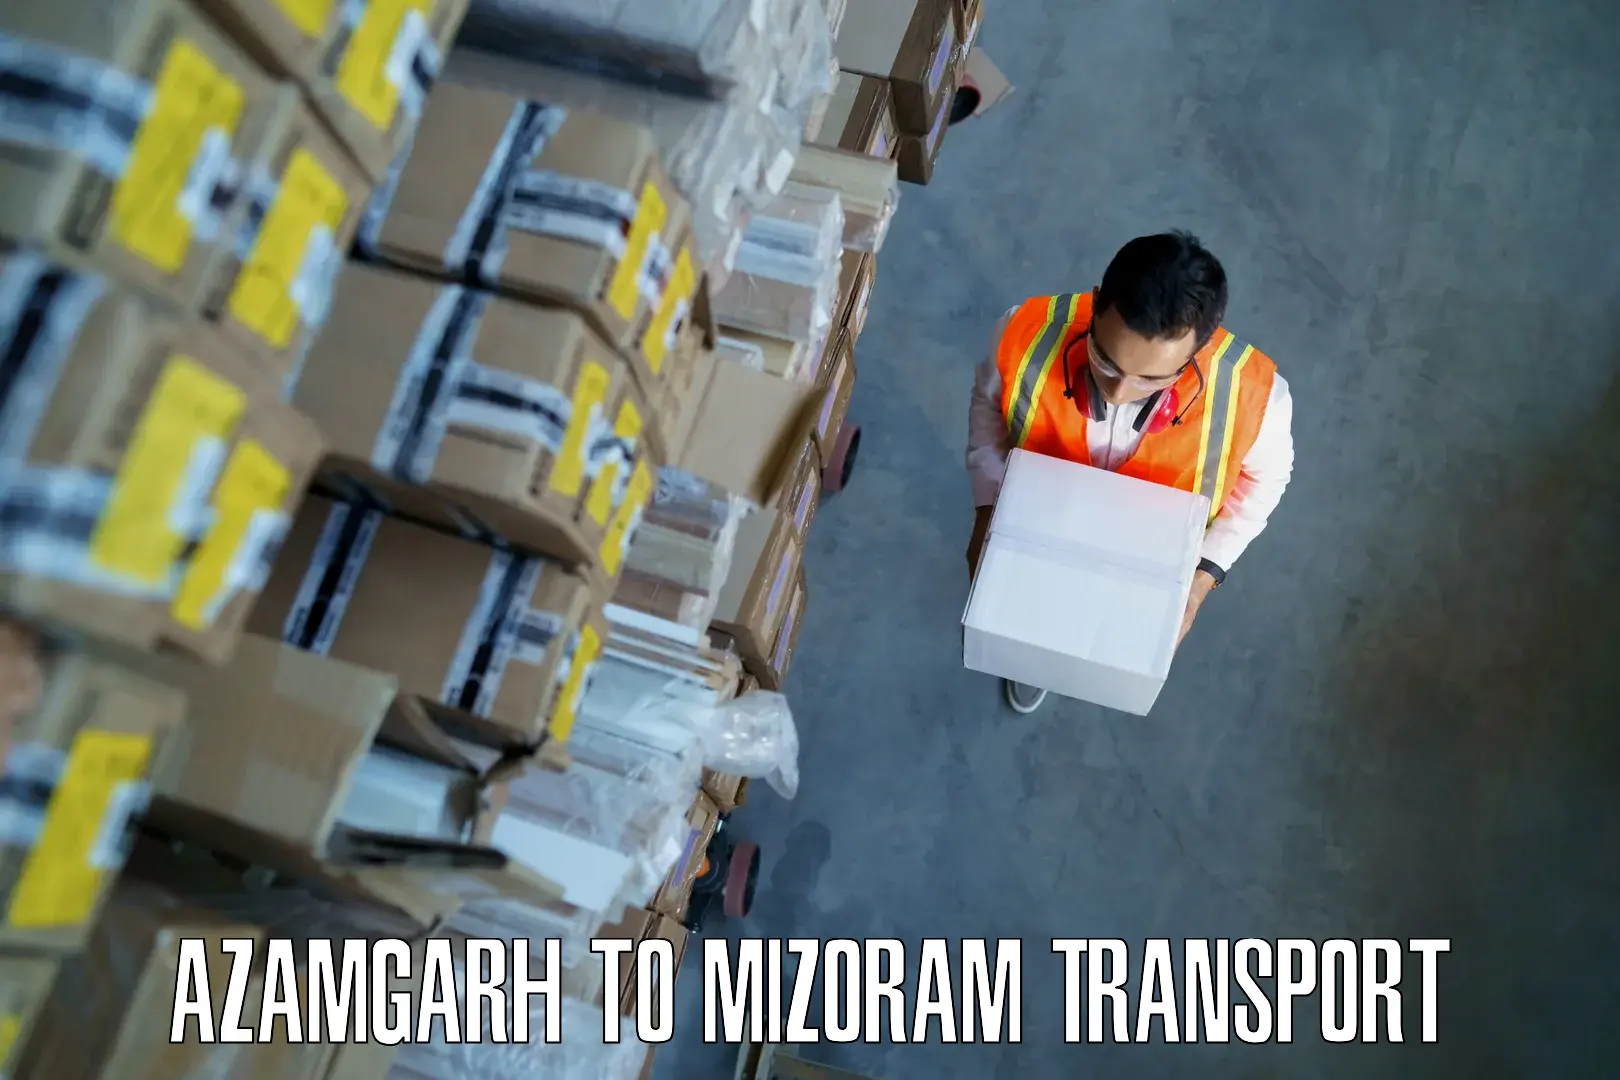 Bike shipping service Azamgarh to Darlawn